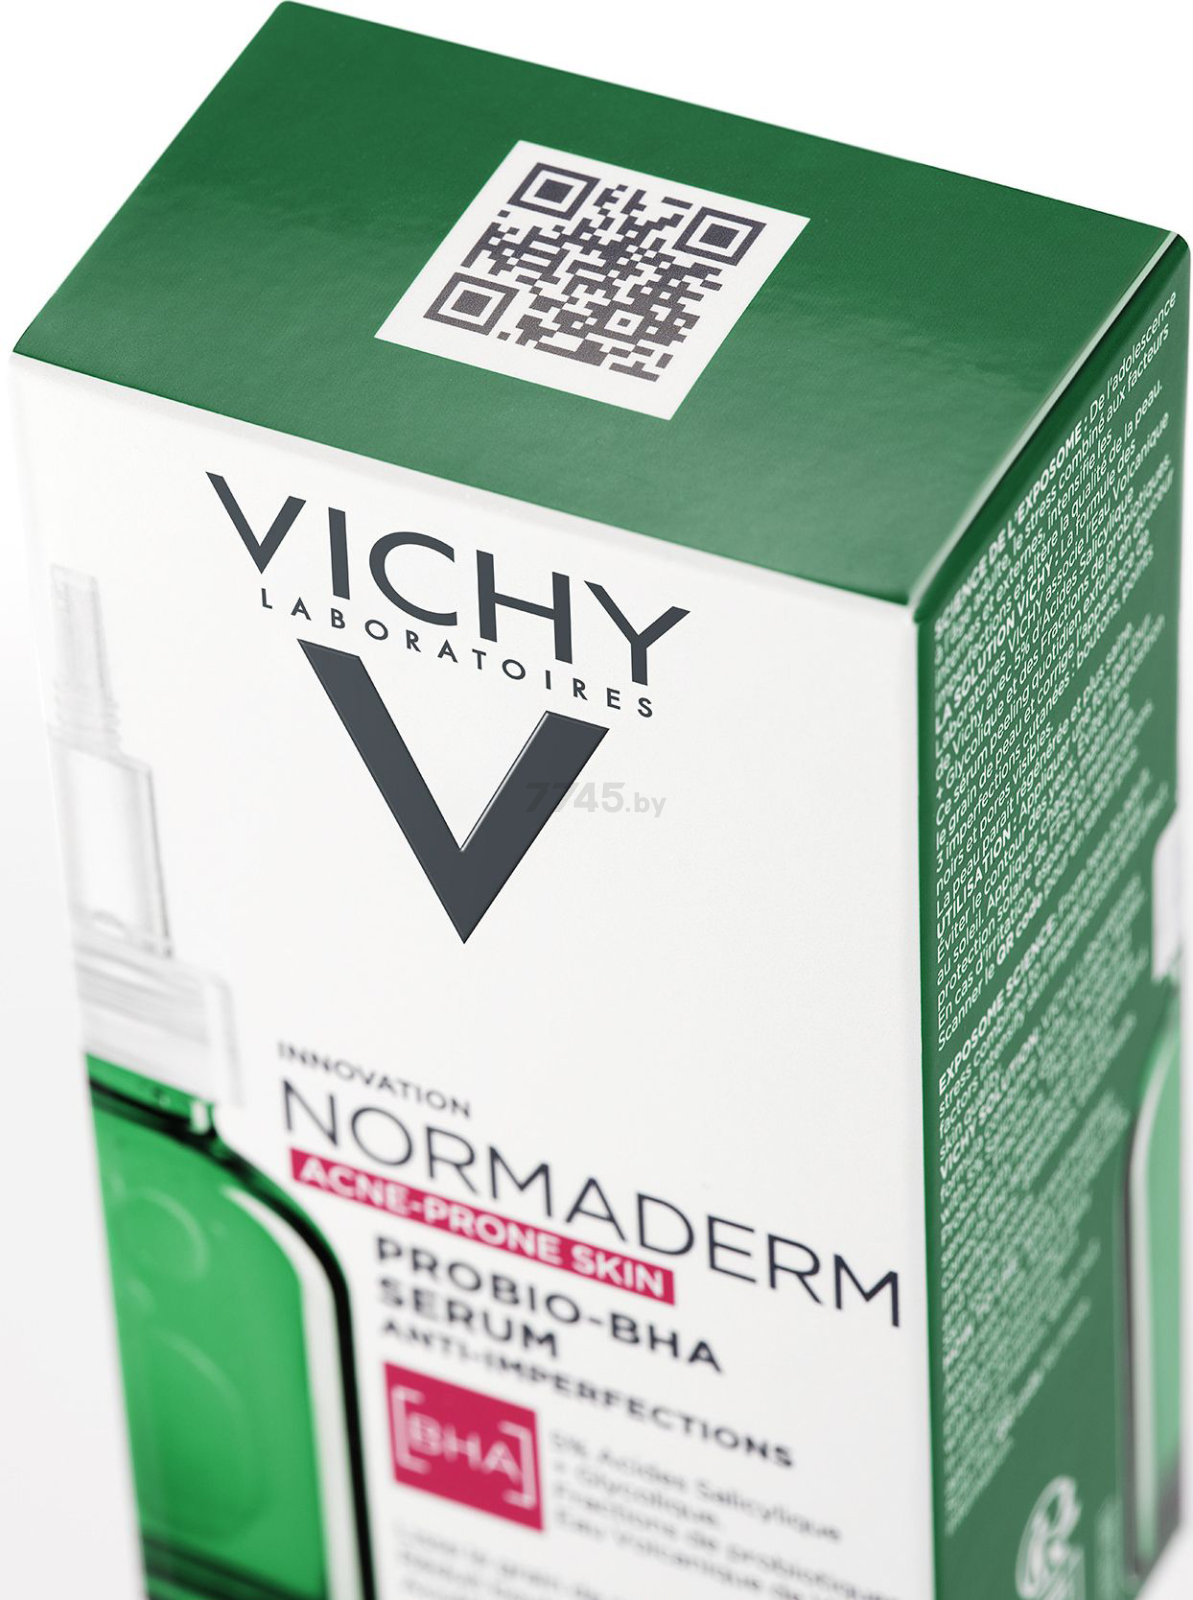 Сыворотка VICHY Normaderm Probio-Bha Serum Пробиотическая обновляющая против несовершенств кожи 30 мл (3337875791984) - Фото 5